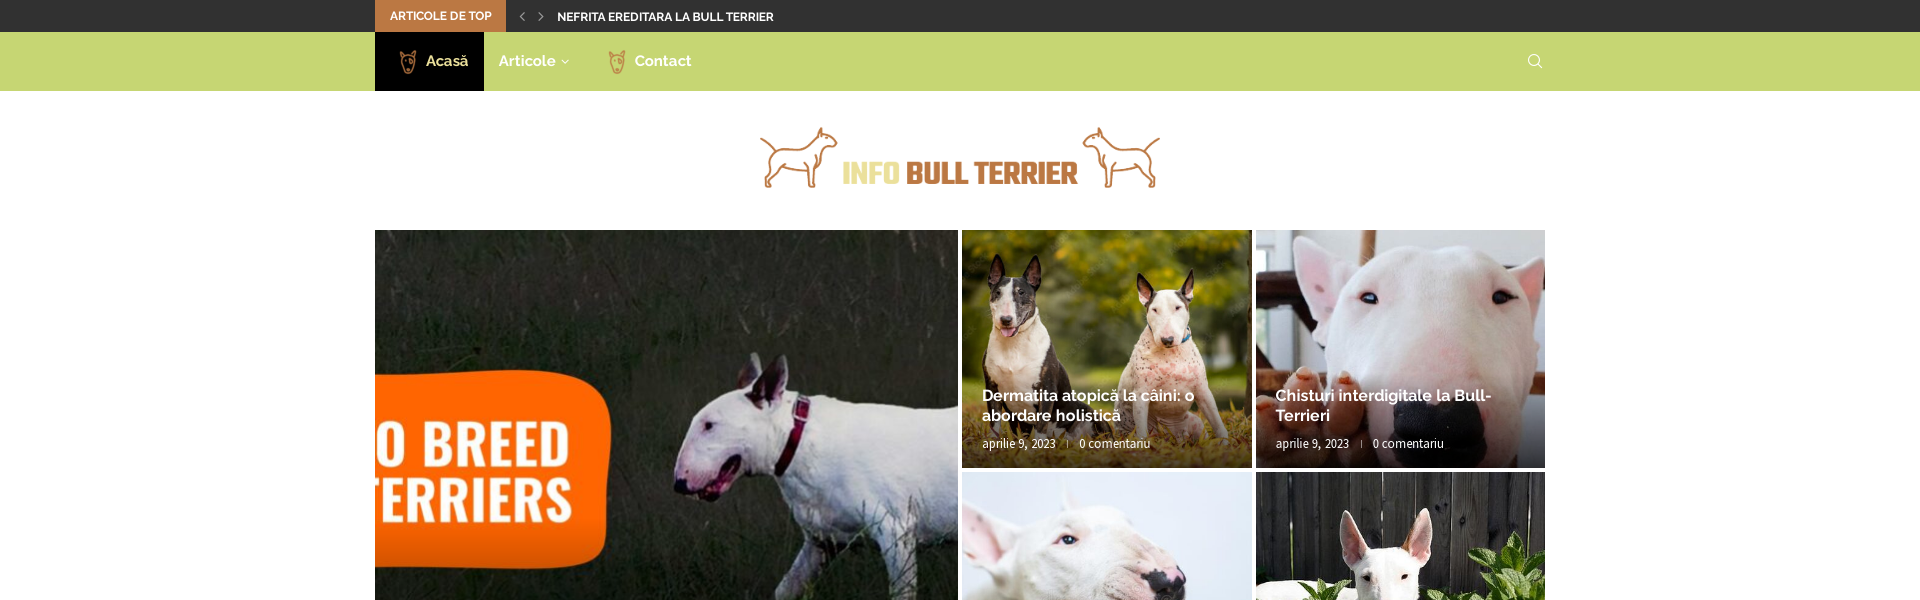 Info Bull Terrier